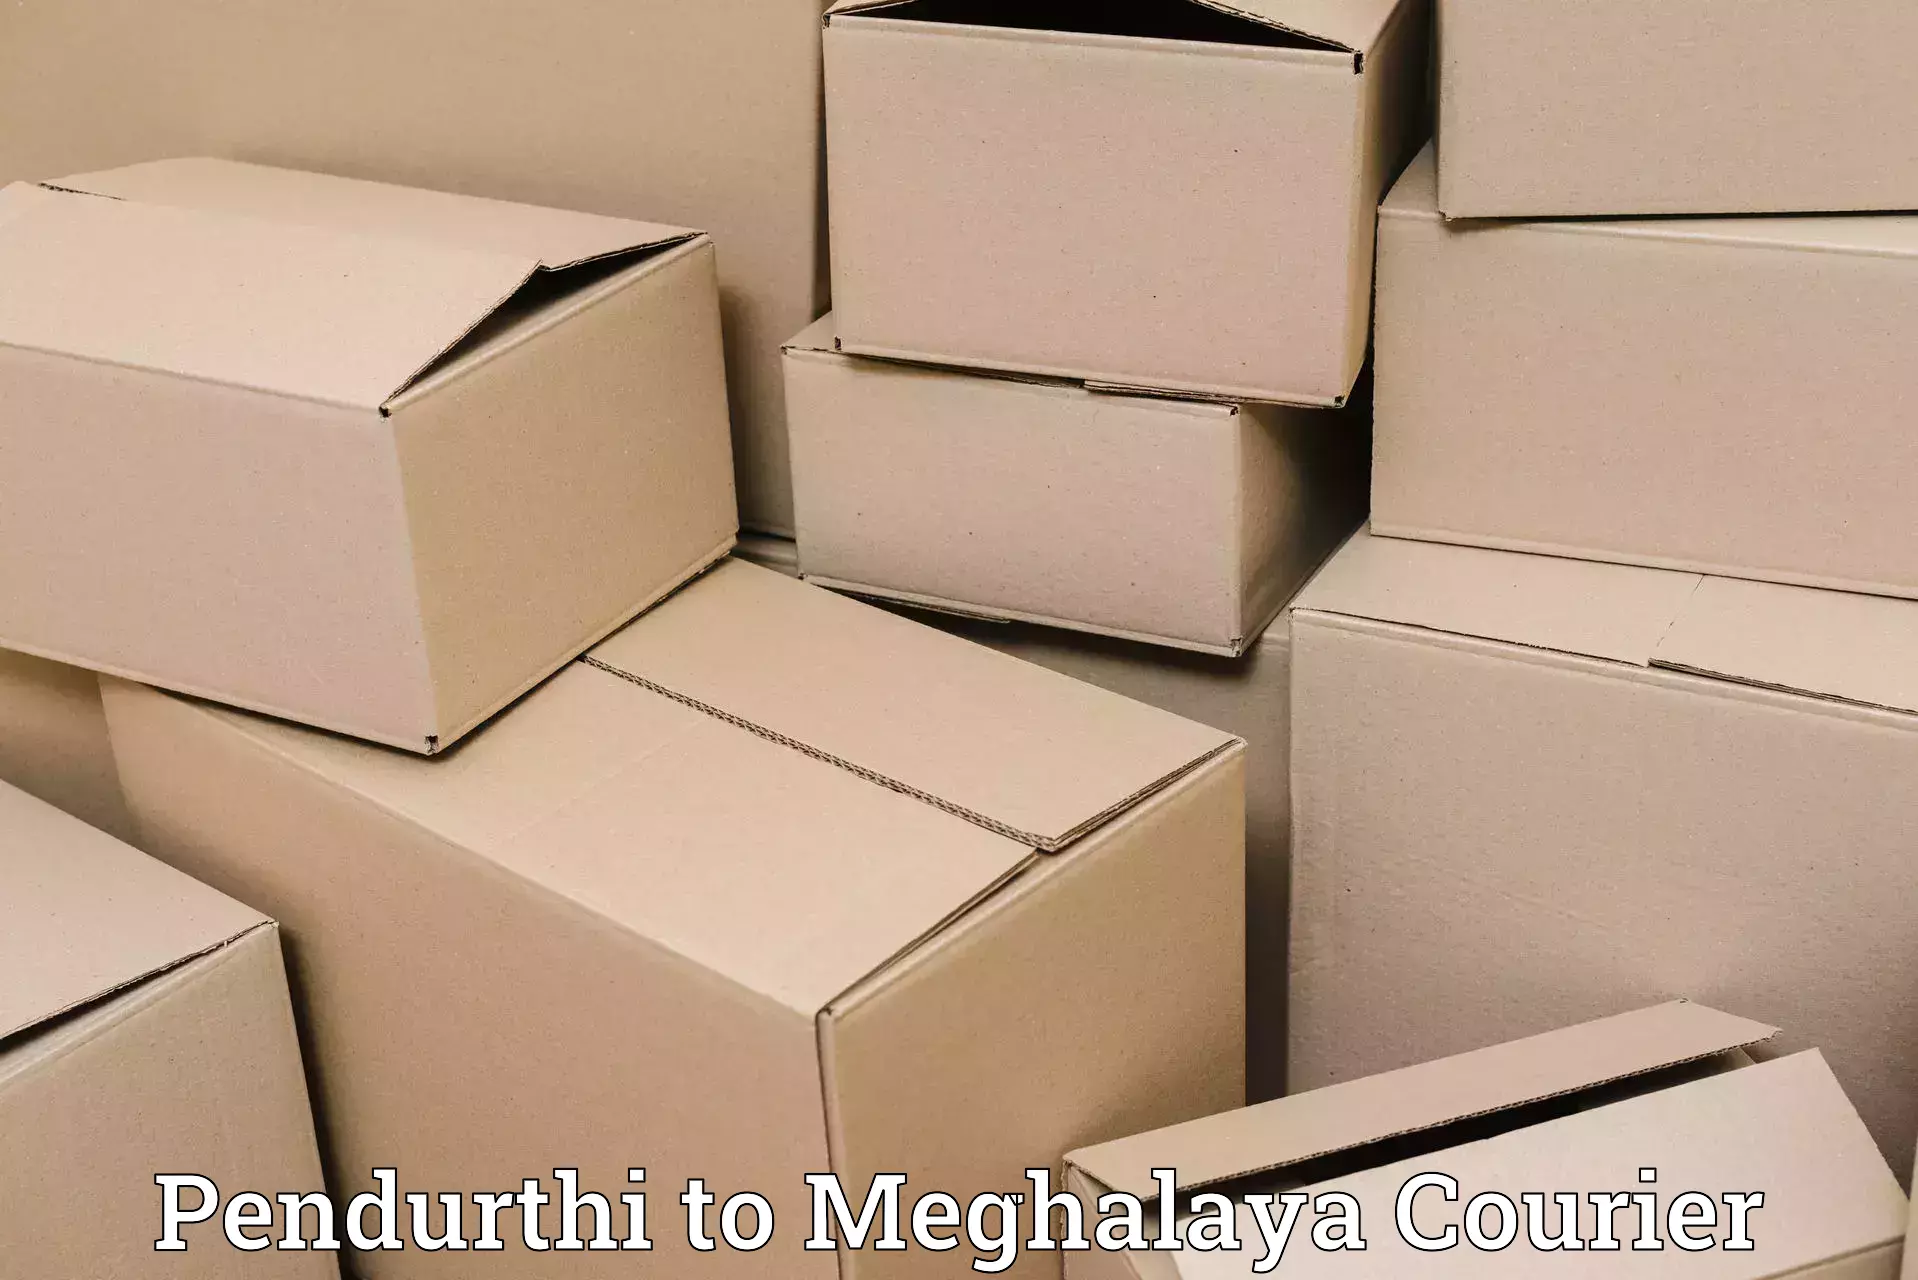 Advanced courier platforms in Pendurthi to Meghalaya